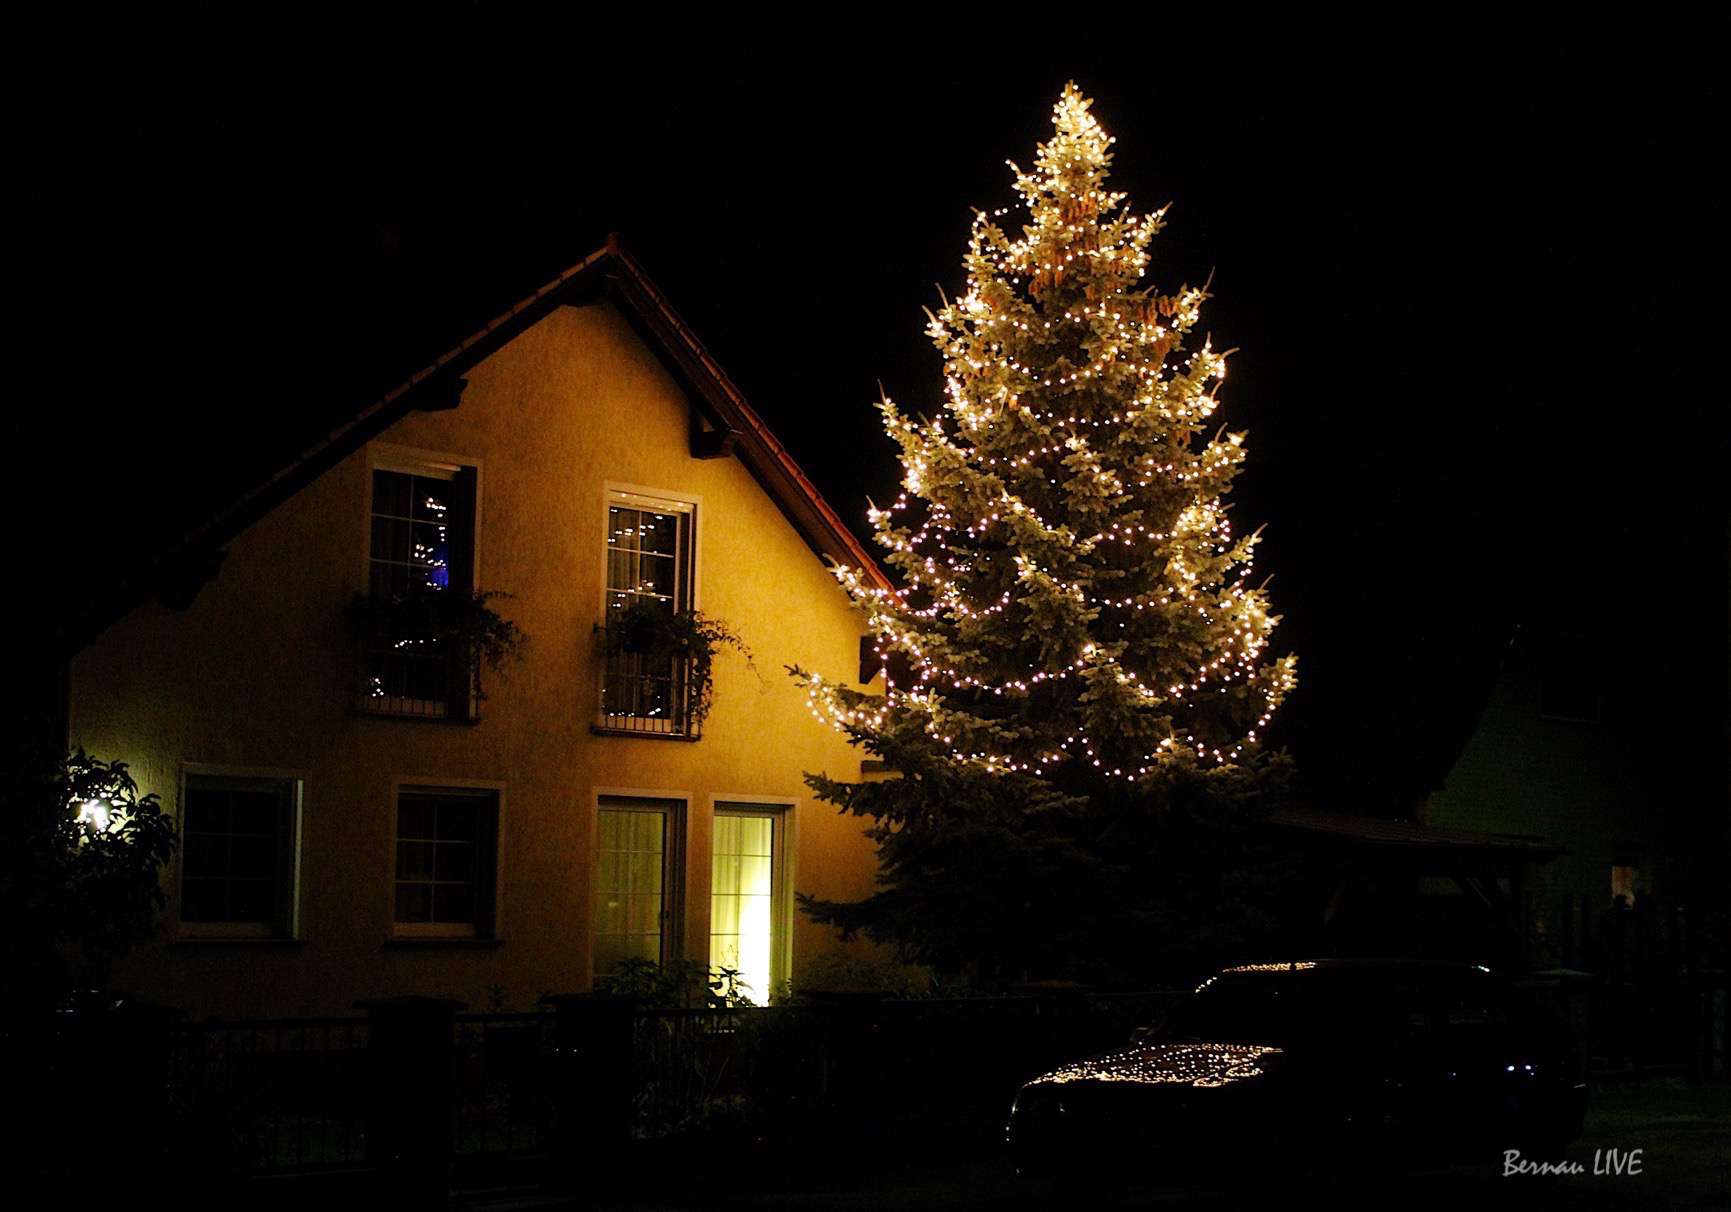 Wir haben den 1. Weihnachtsbaum in Bernau entdeckt